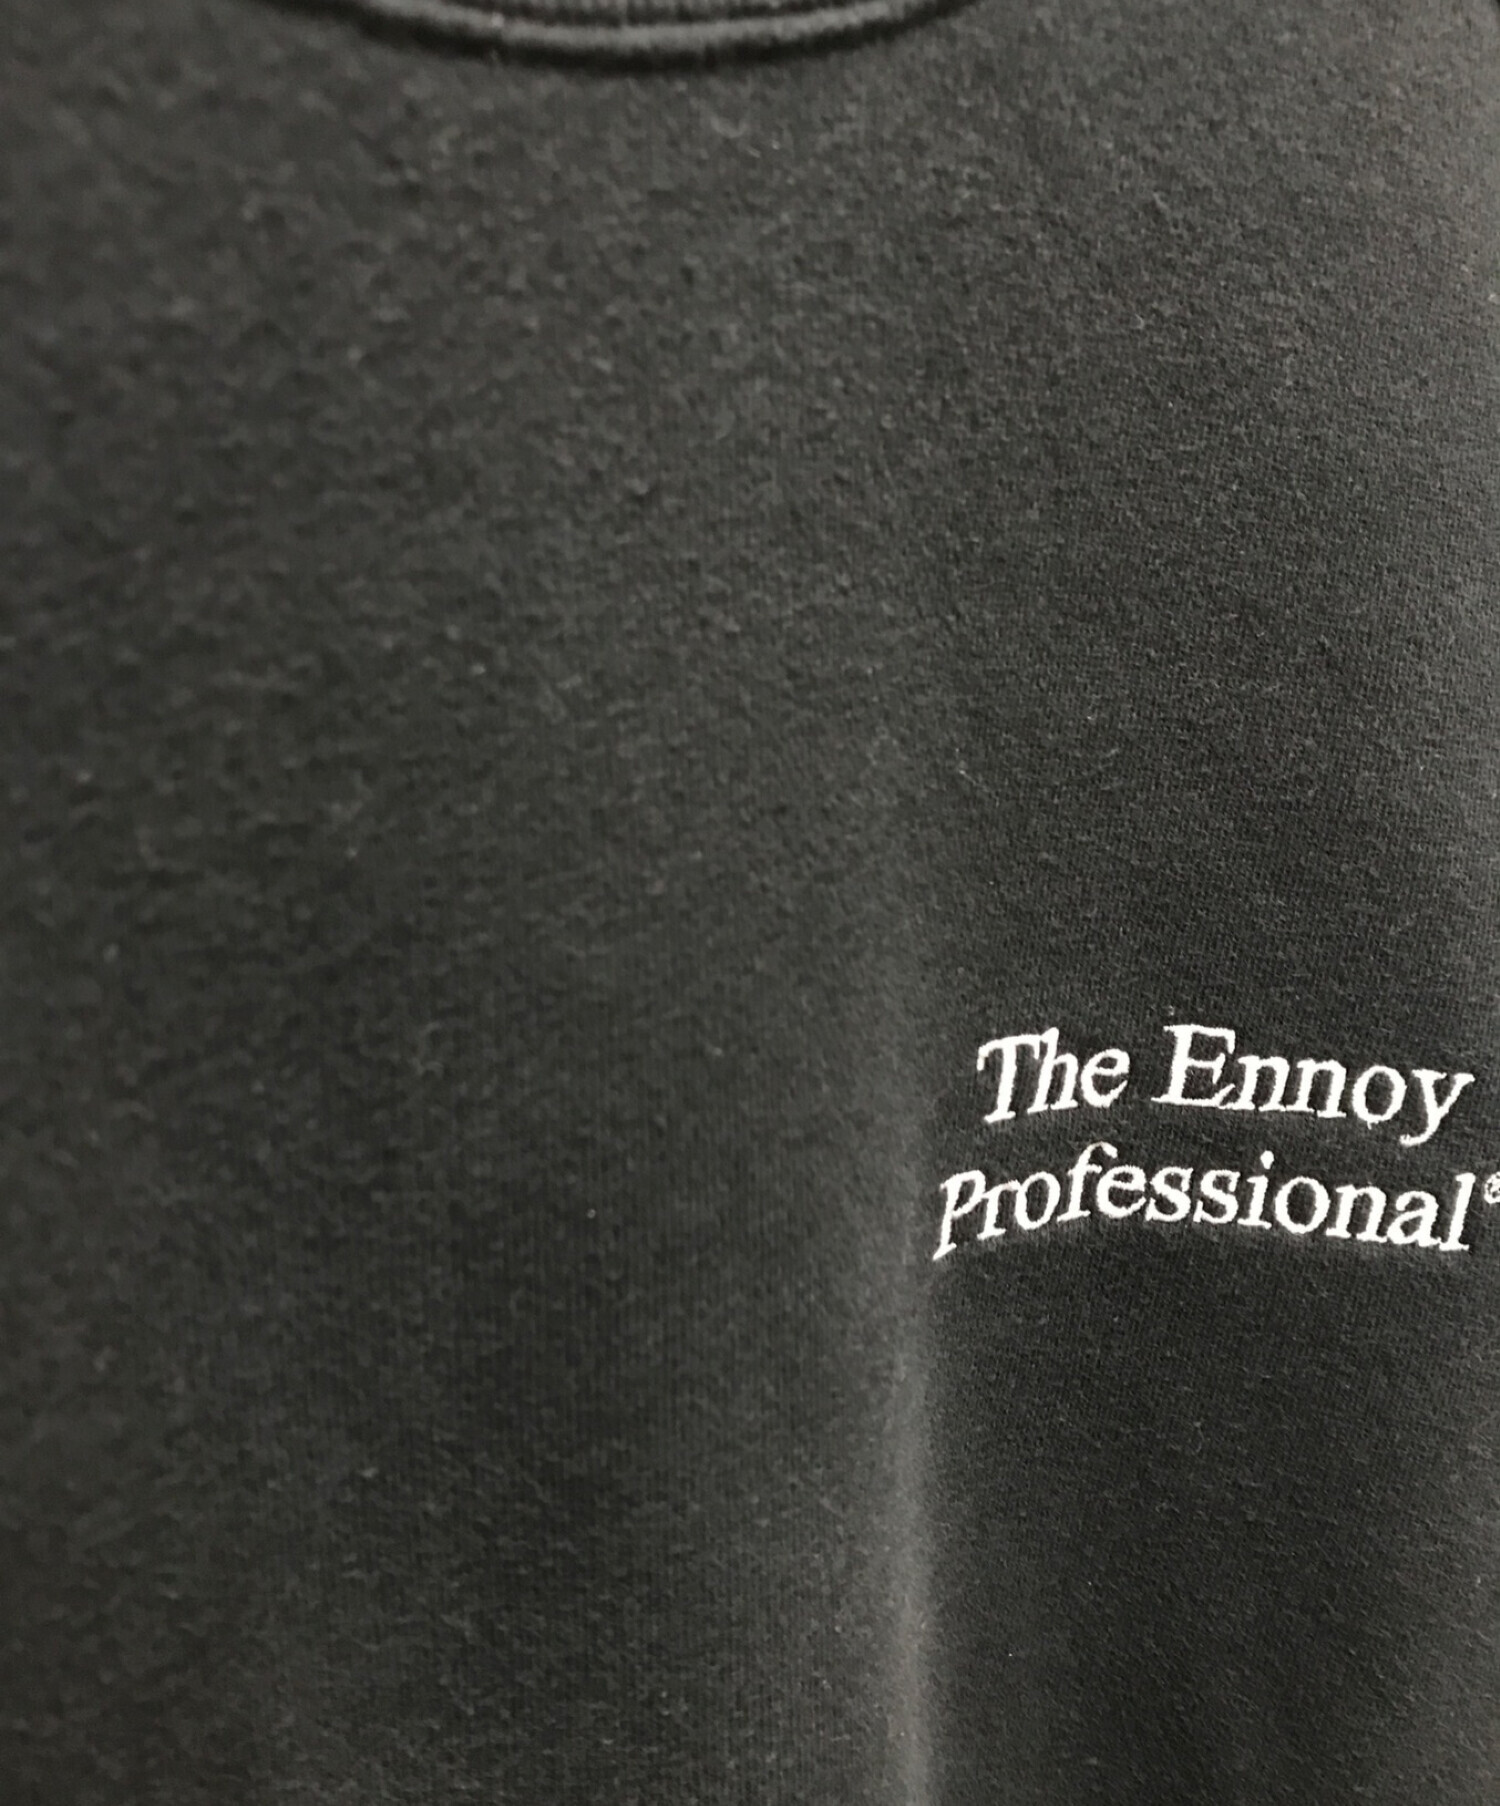 スタイリスト私物×The Ennoy Professional×is-ness (スタイリスト私物×エンノイプロフェッショナル×イズネス)  トリプルコラボクルーネックスウェット ブラック サイズ:L